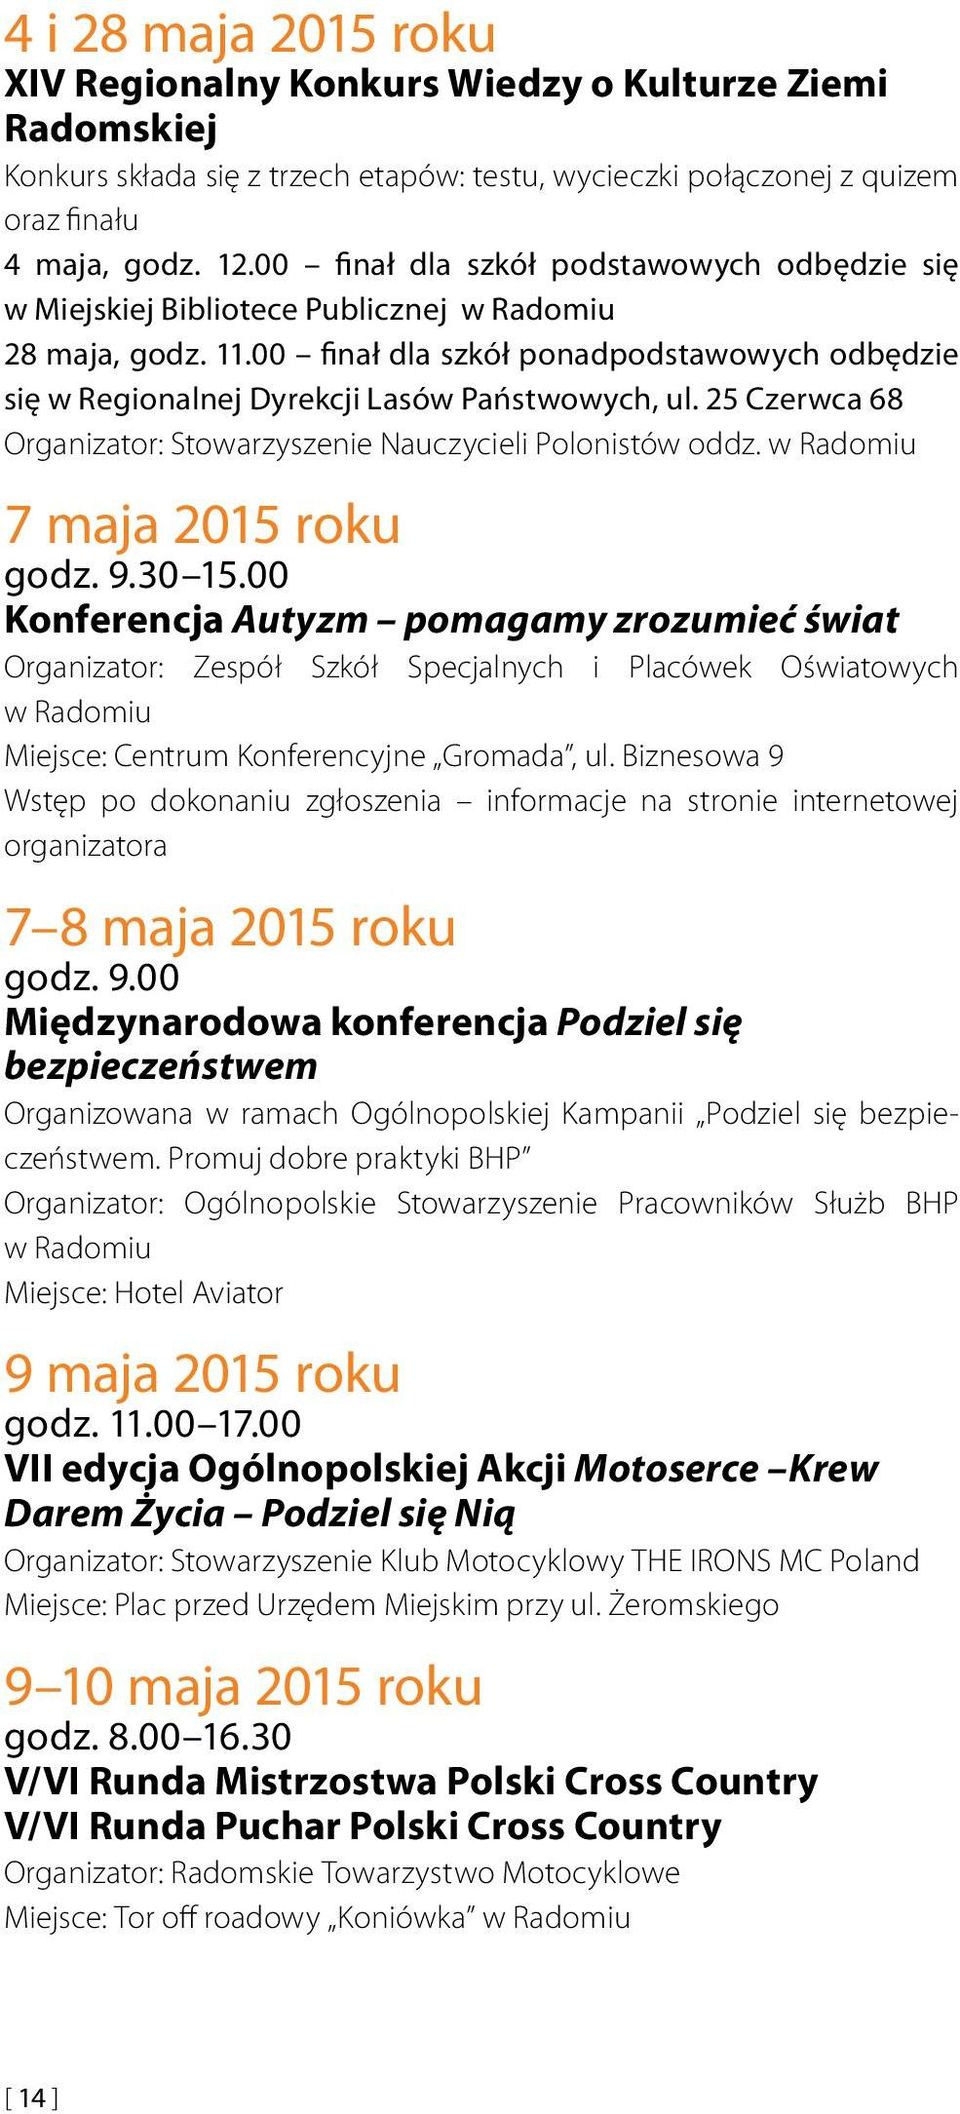 00 finał dla szkół ponadpodstawowych odbędzie się w Regionalnej Dyrekcji Lasów Państwowych, ul. 25 Czerwca 68 Organizator: Stowarzyszenie Nauczycieli Polonistów oddz. w Radomiu 7 maja 2015 roku godz.